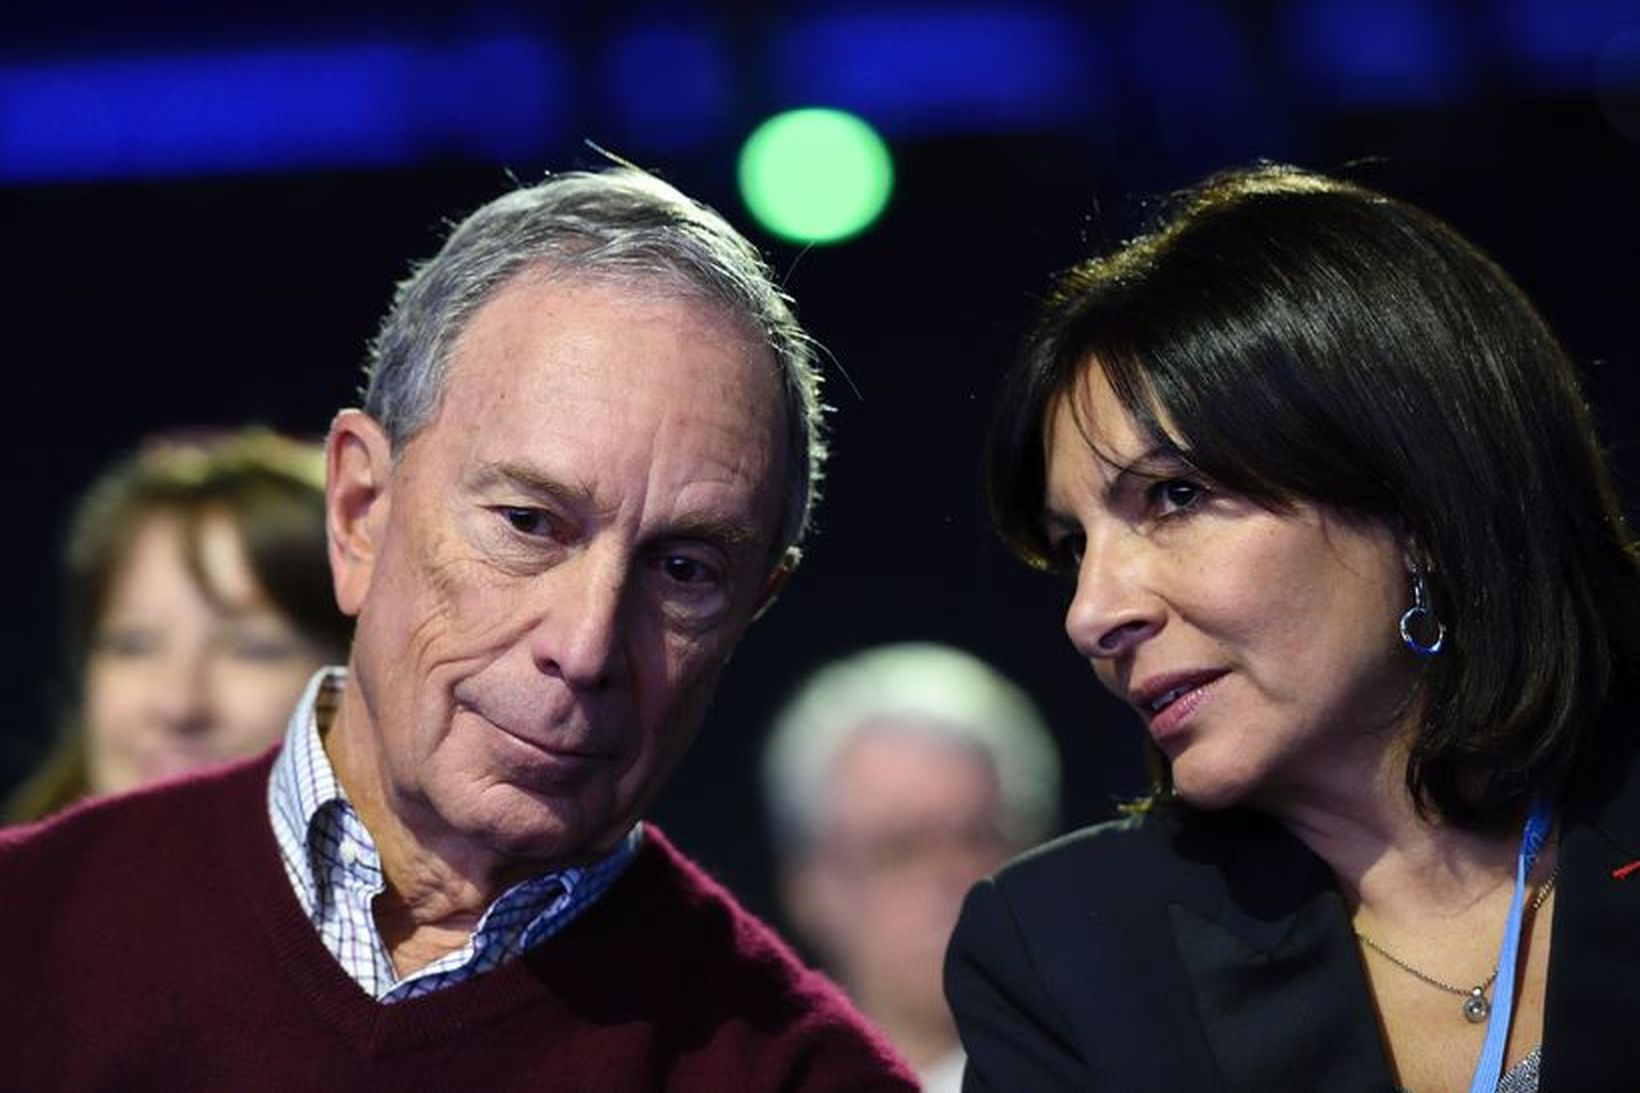 Michael Bloomberg ásamt Anne Hidalgo, borgarstjóra Parísar.